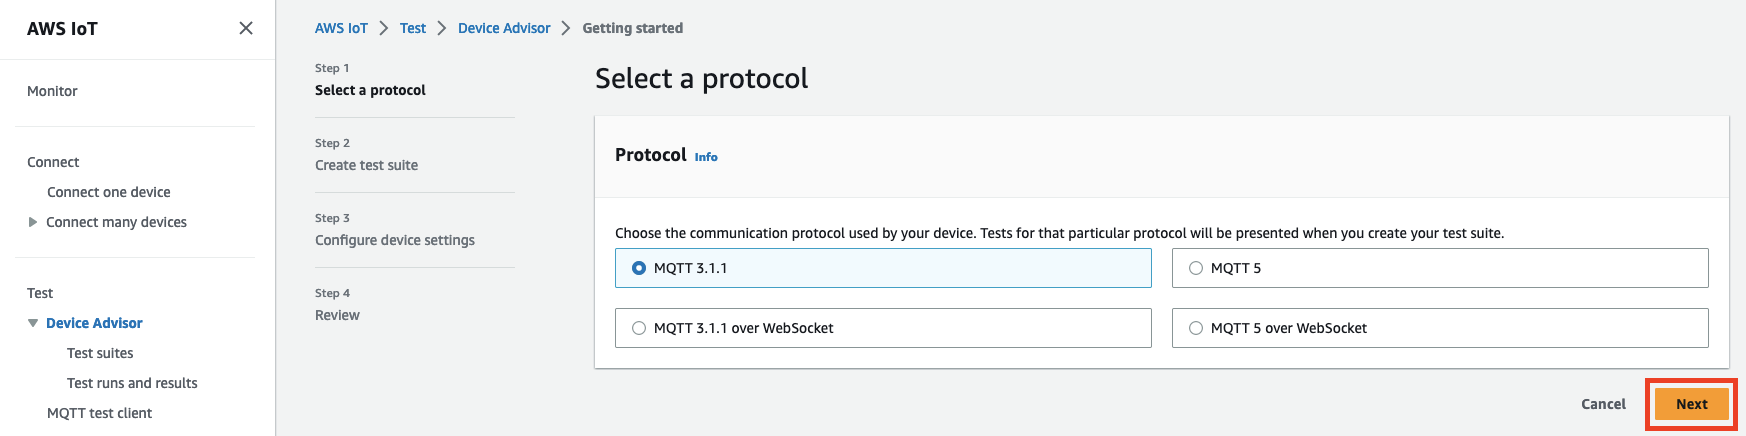 Interfaccia Device Advisor che mostra le opzioni per selezionare un protocollo di comunicazione (MQTT 3.1.1, MQTT 3.1.1 over WebSocket, MQTT 5 over) WebSocket per testare un dispositivo IoT.